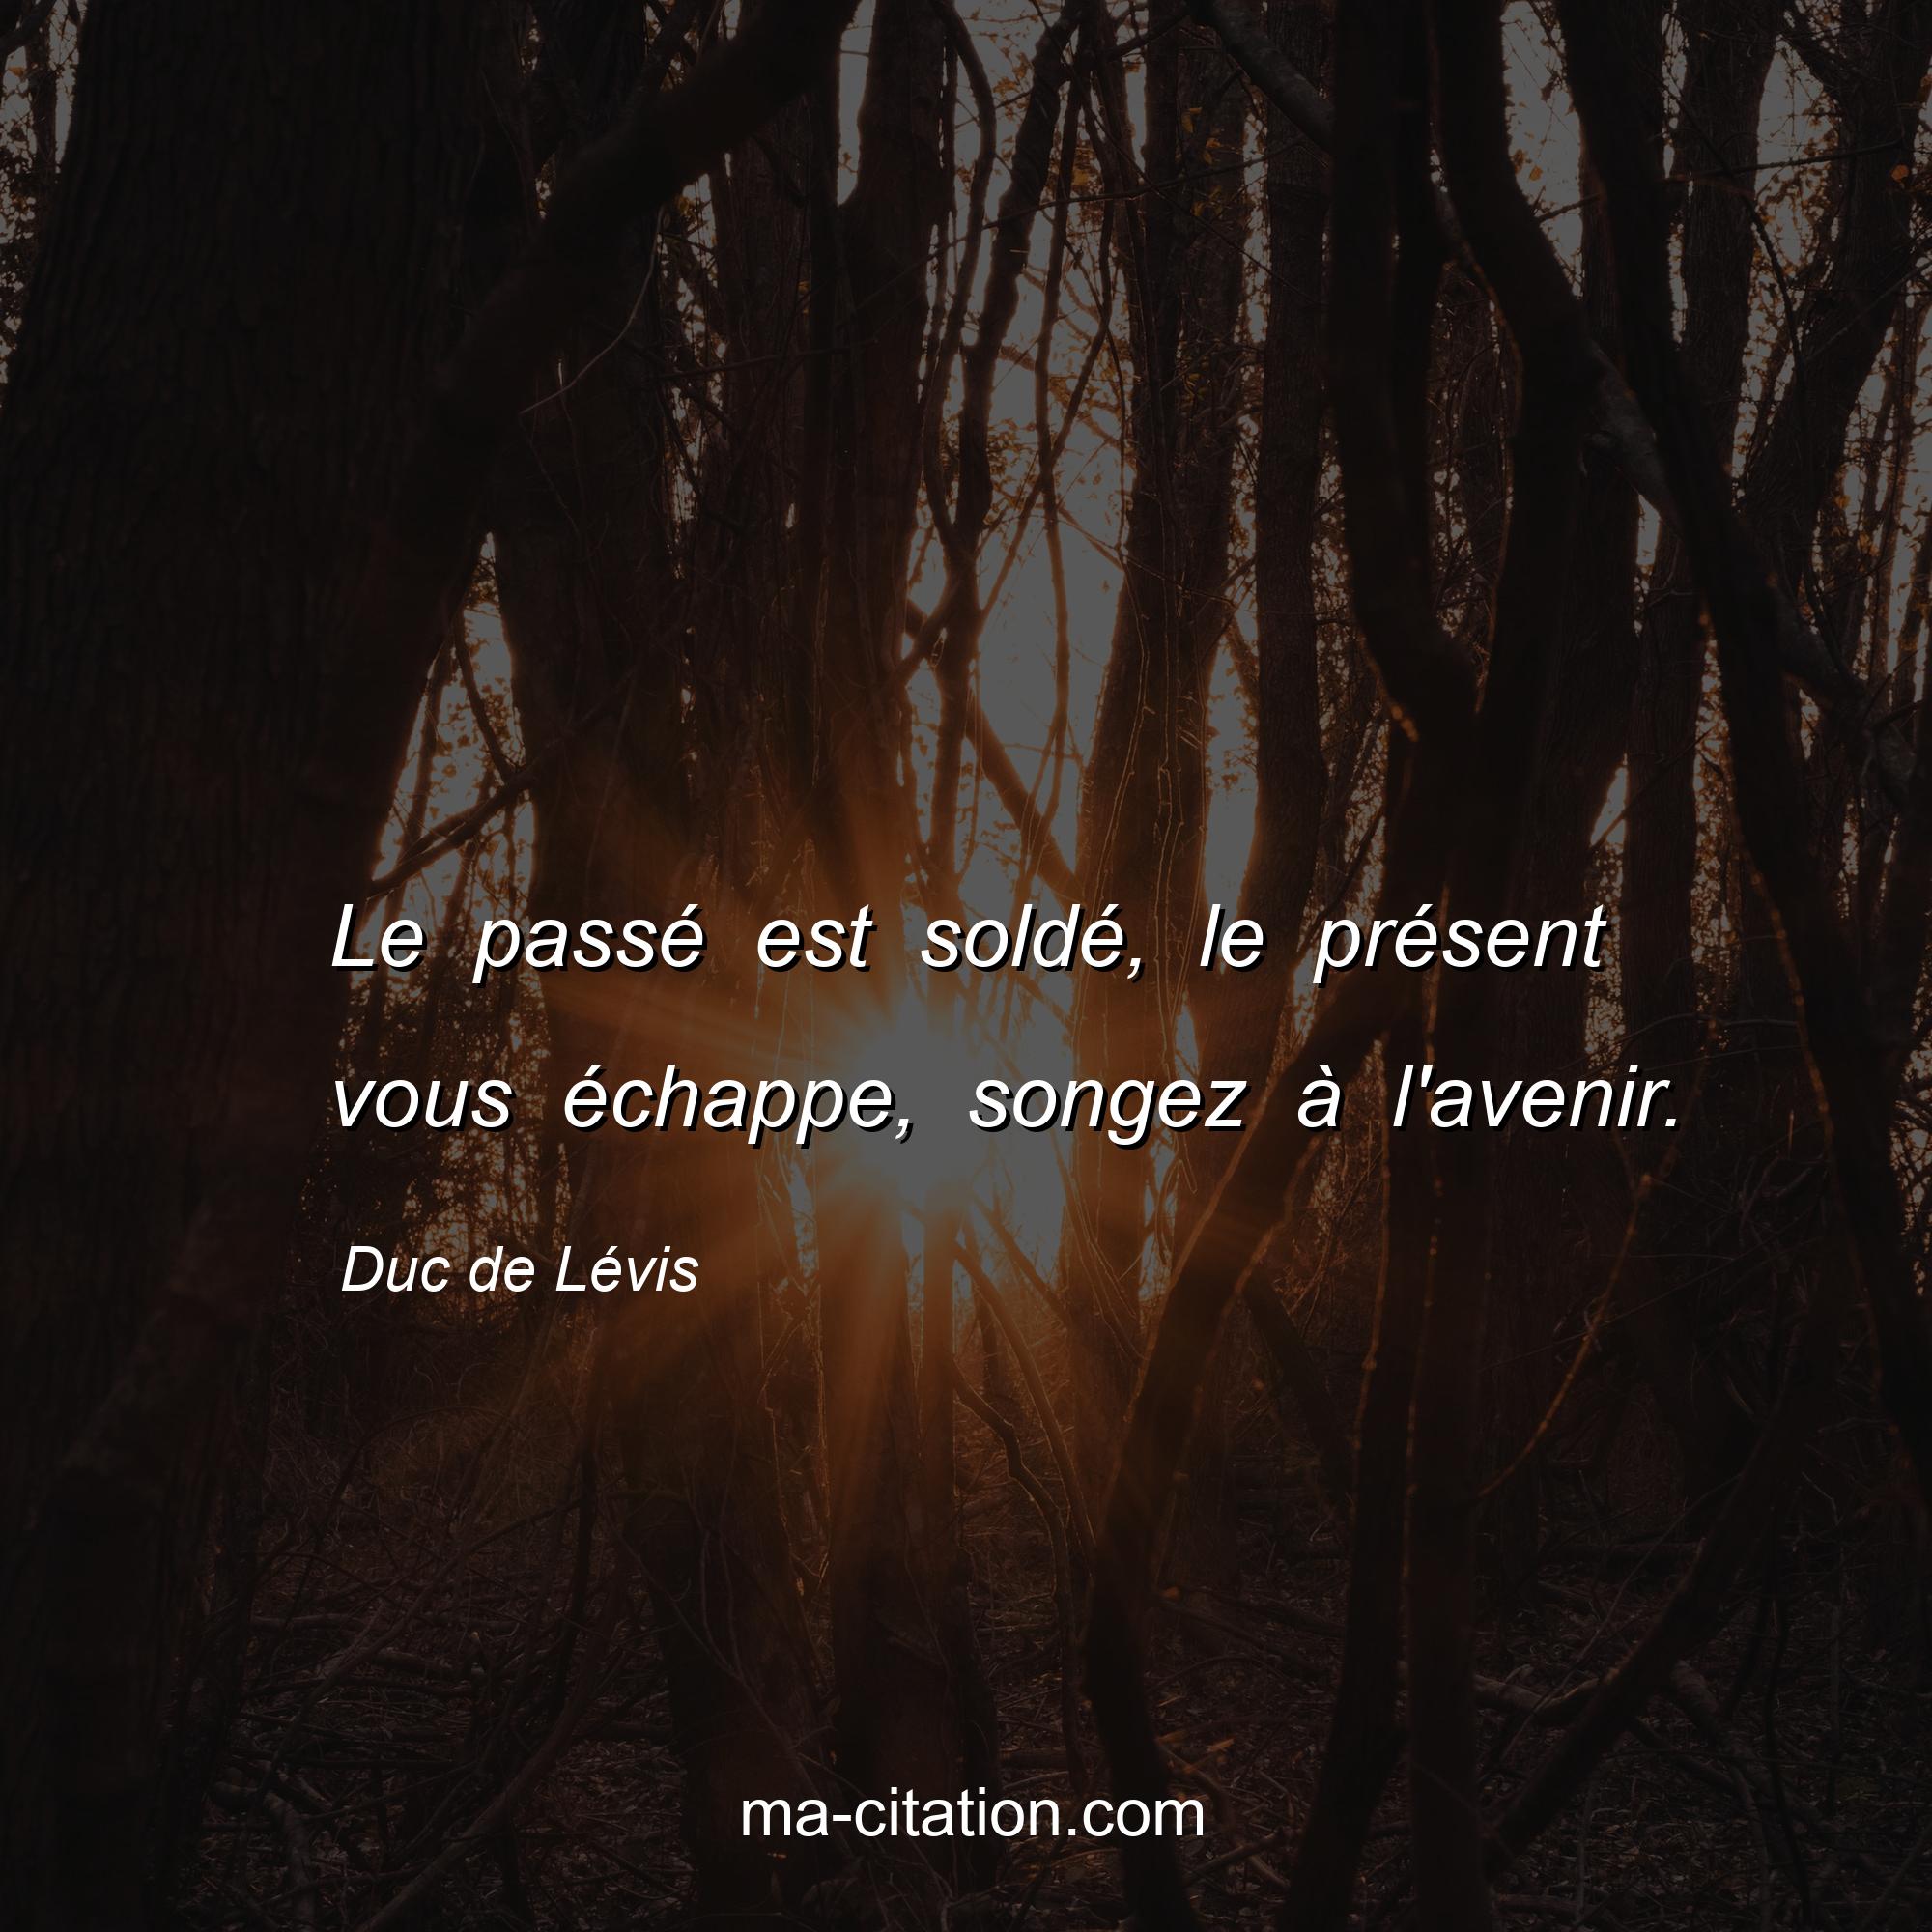 Duc de Lévis : Le passé est soldé, le présent vous échappe, songez à l'avenir.